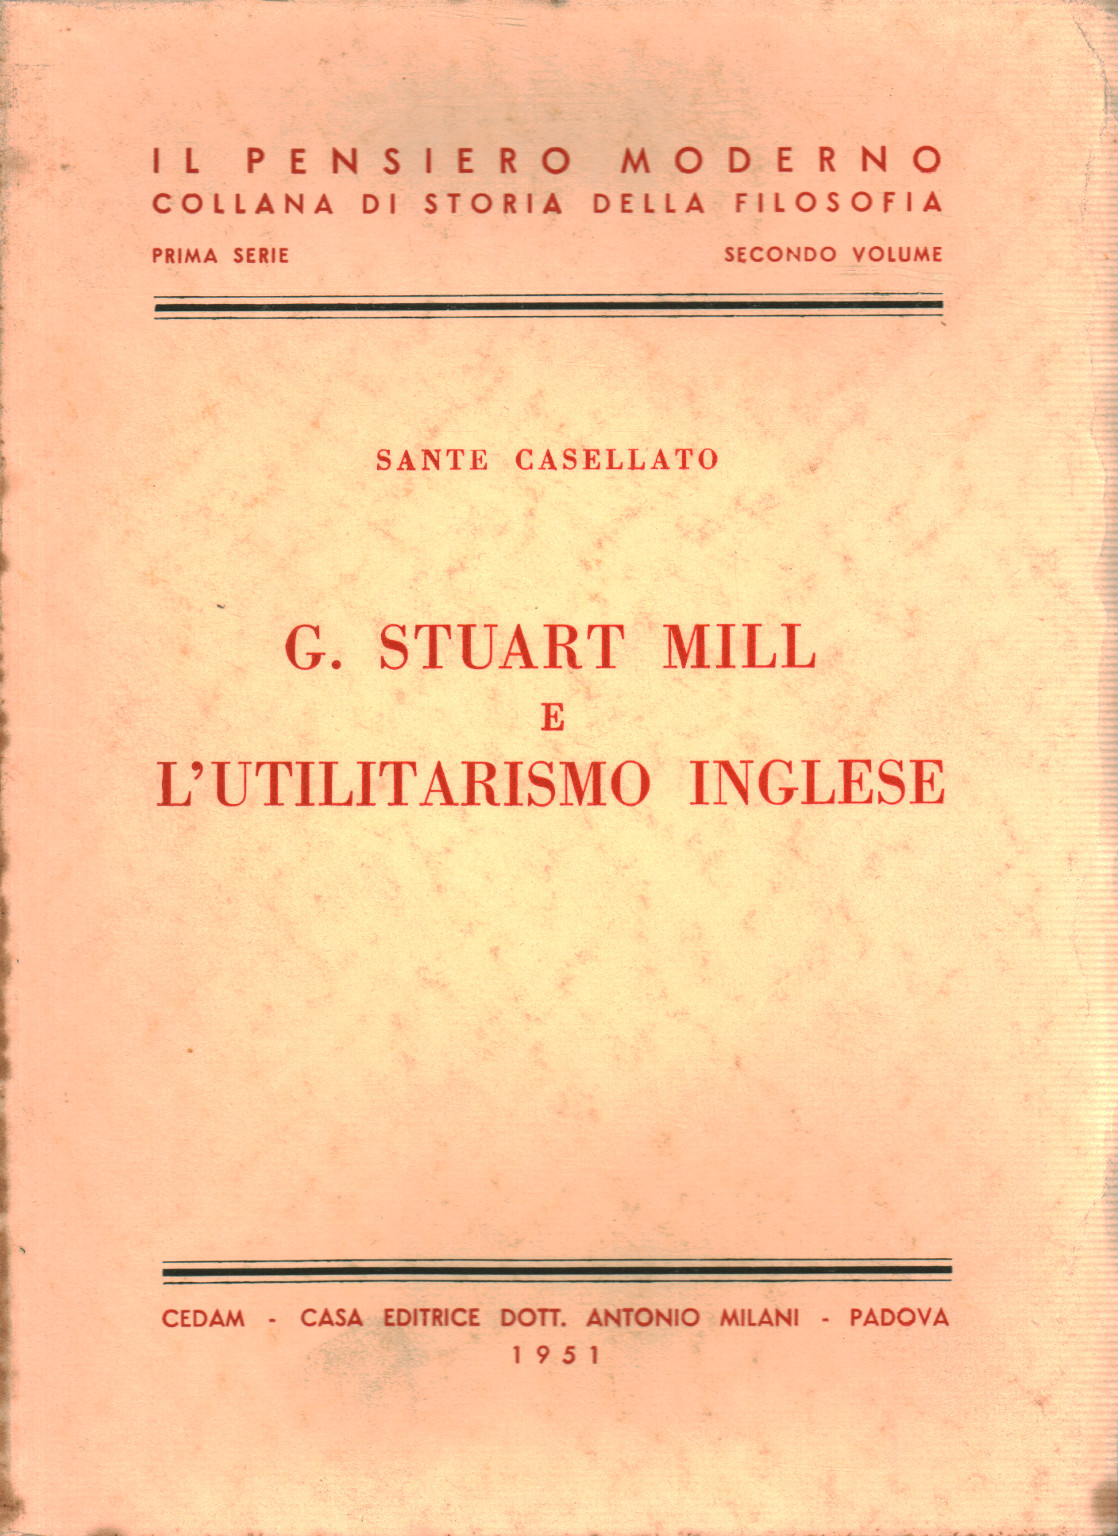 G. Stuart Mill e L'utilitarismo Inglese, Sante Casellato